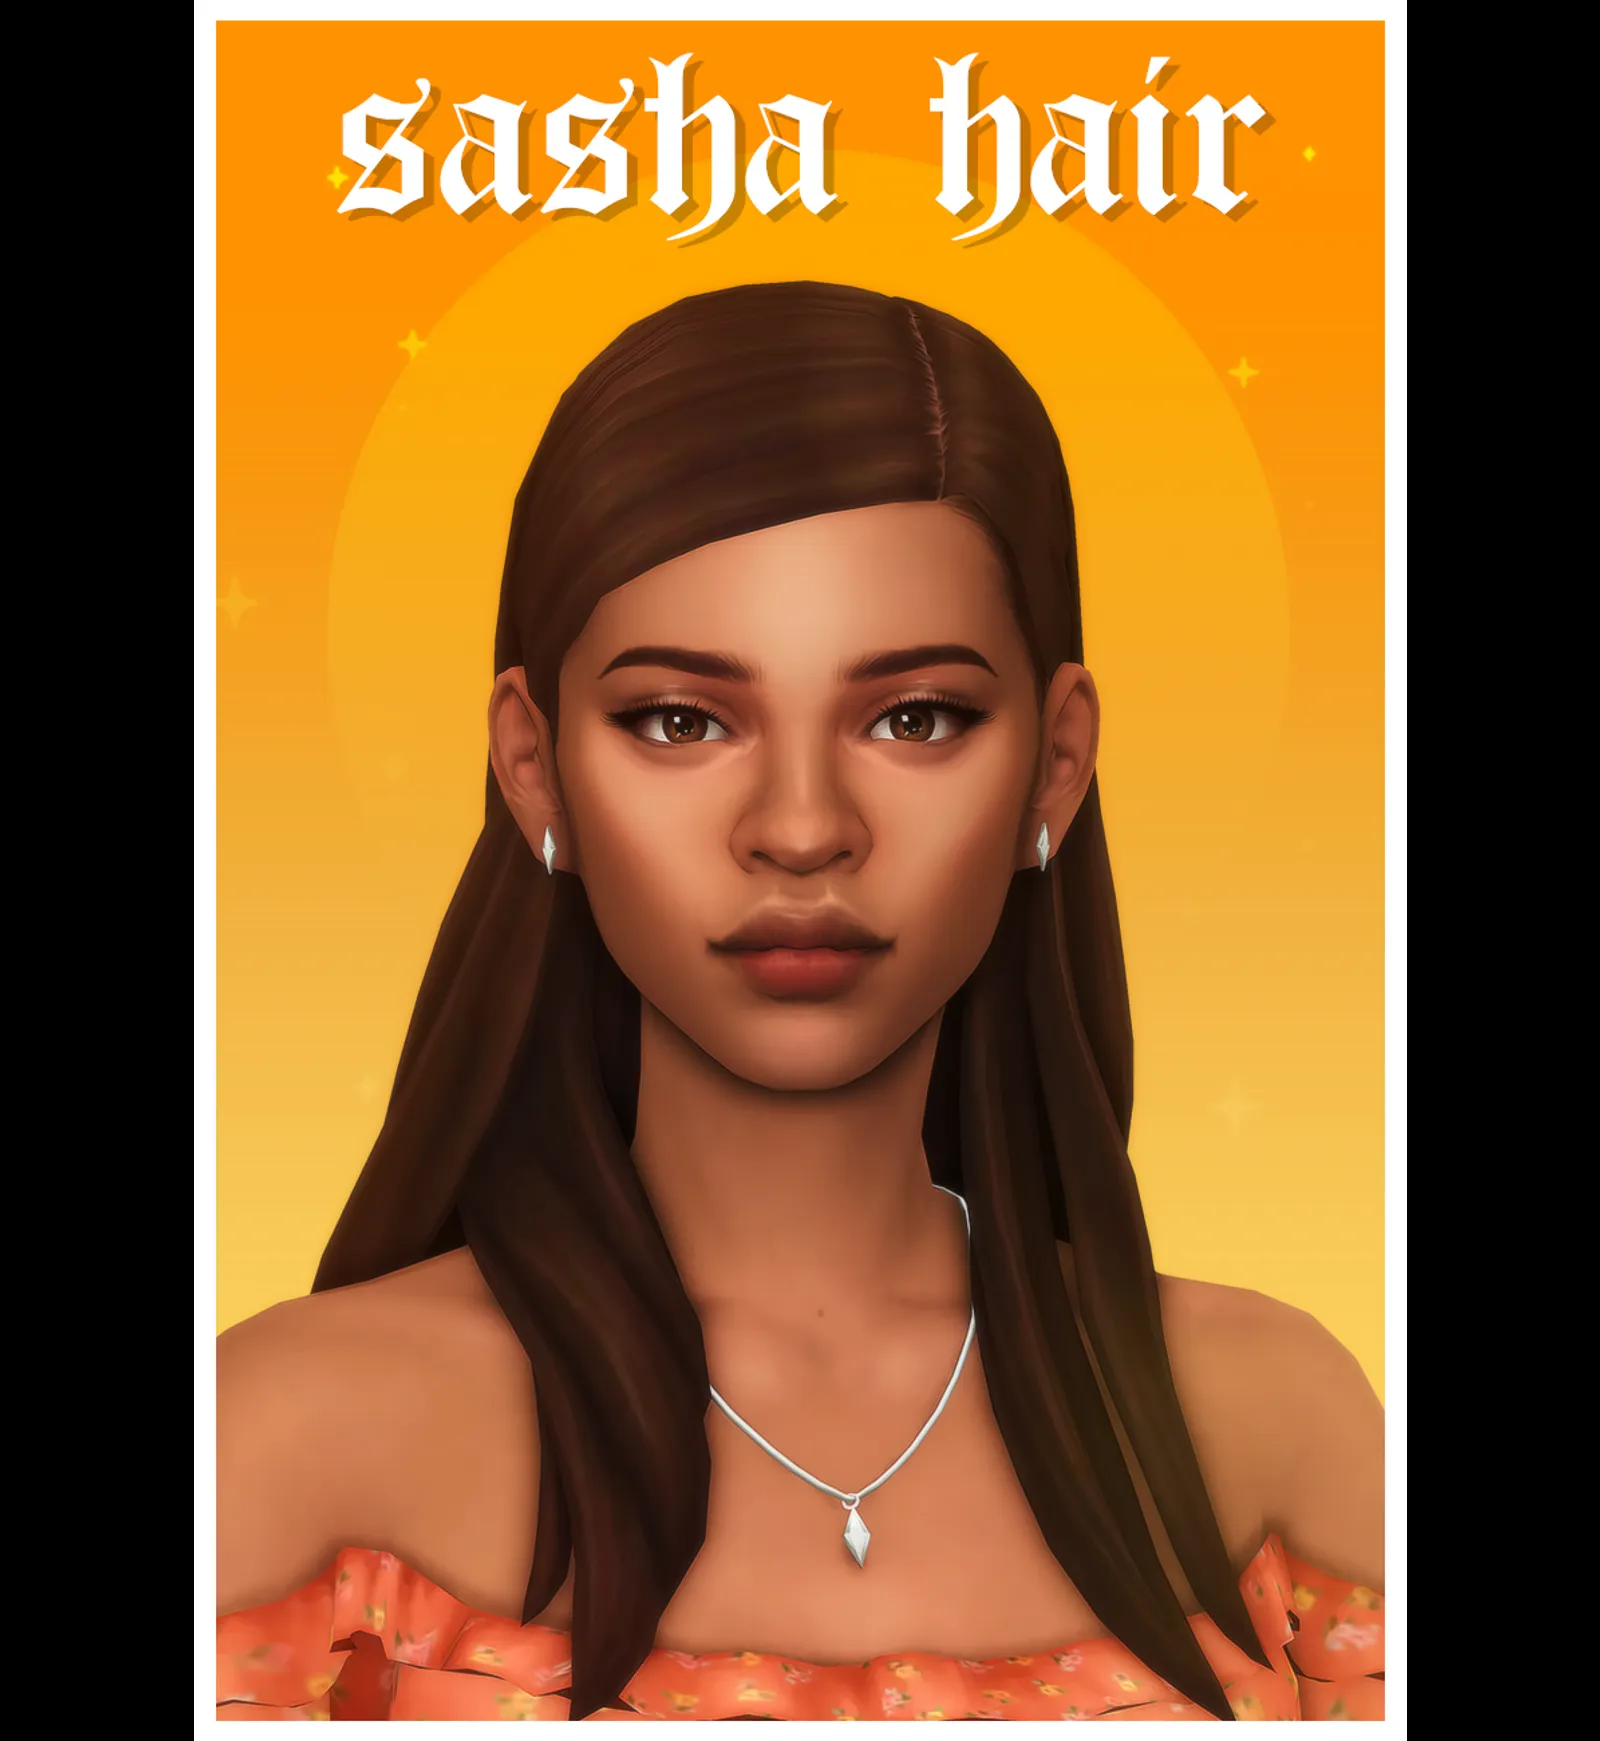 sasha hair